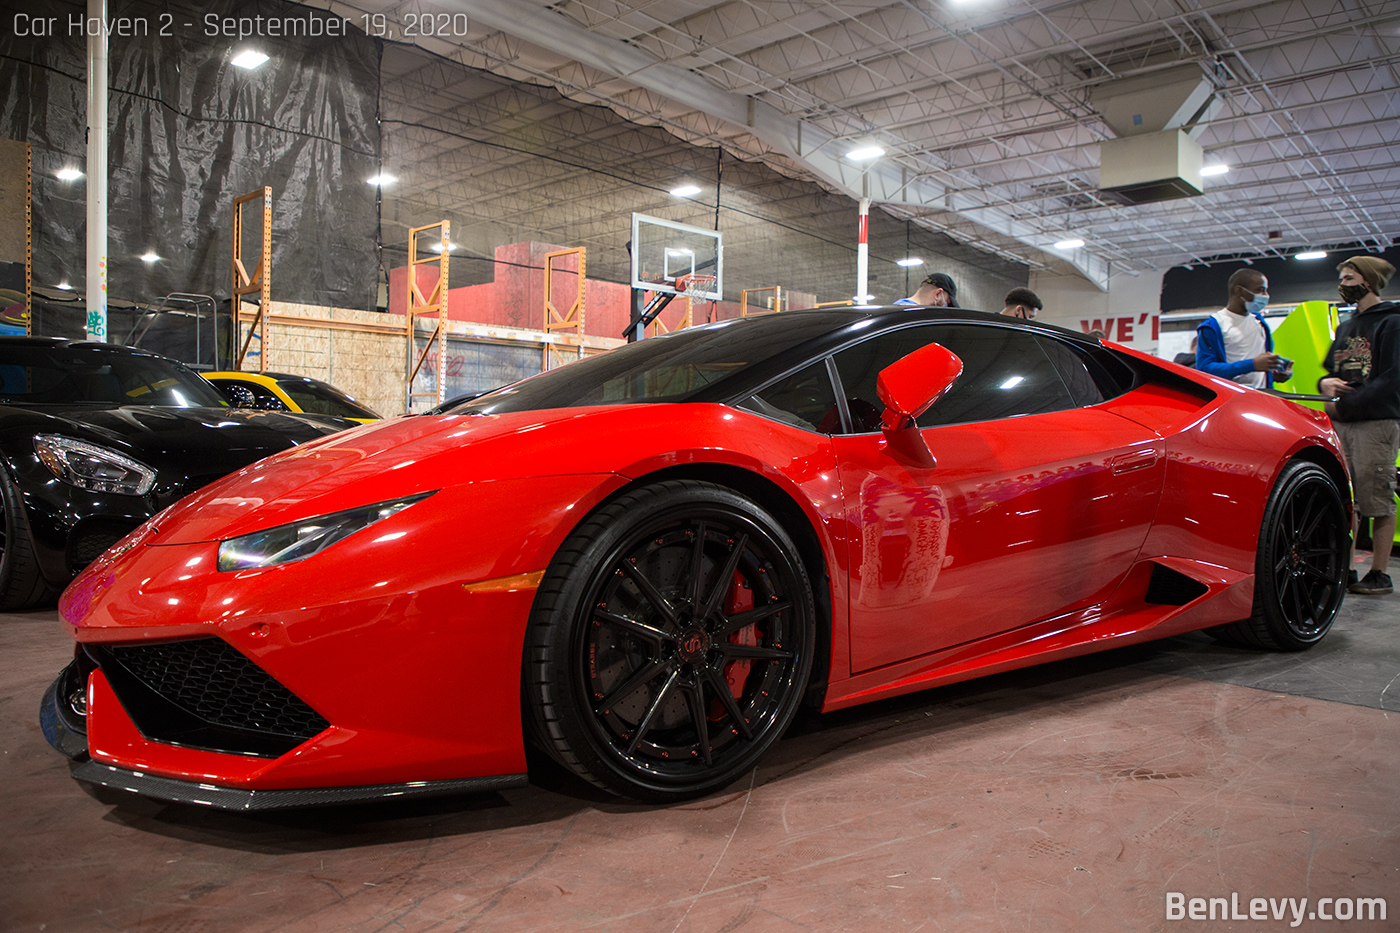 Red Lamborghini Huracan at Car Haven 2